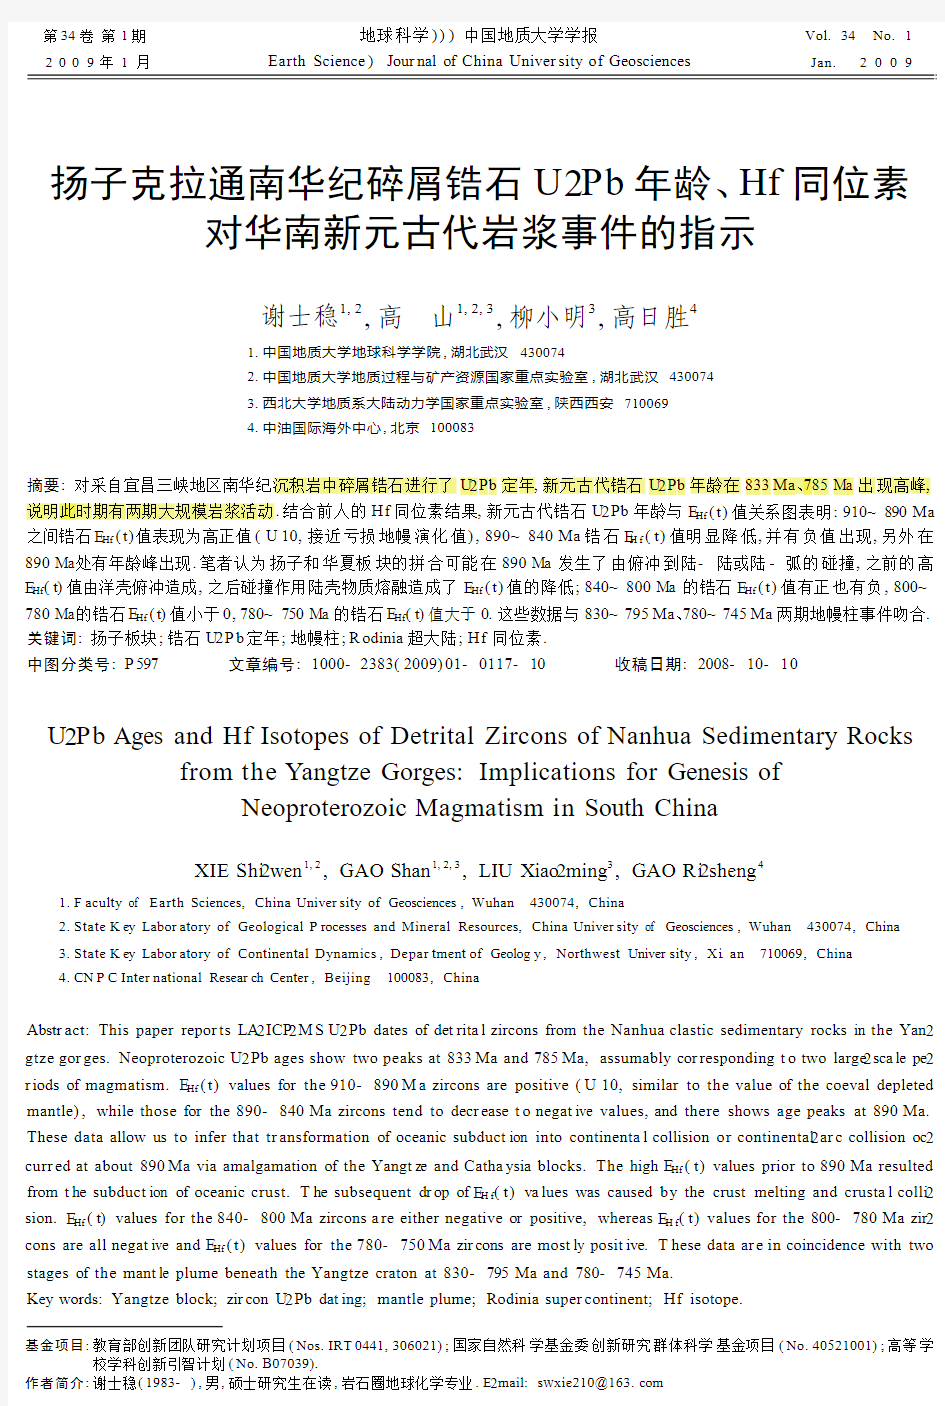 扬子克拉通南华纪碎屑锆石U_Pb年龄_Hf同位素对华南新元古代岩浆事件的指示